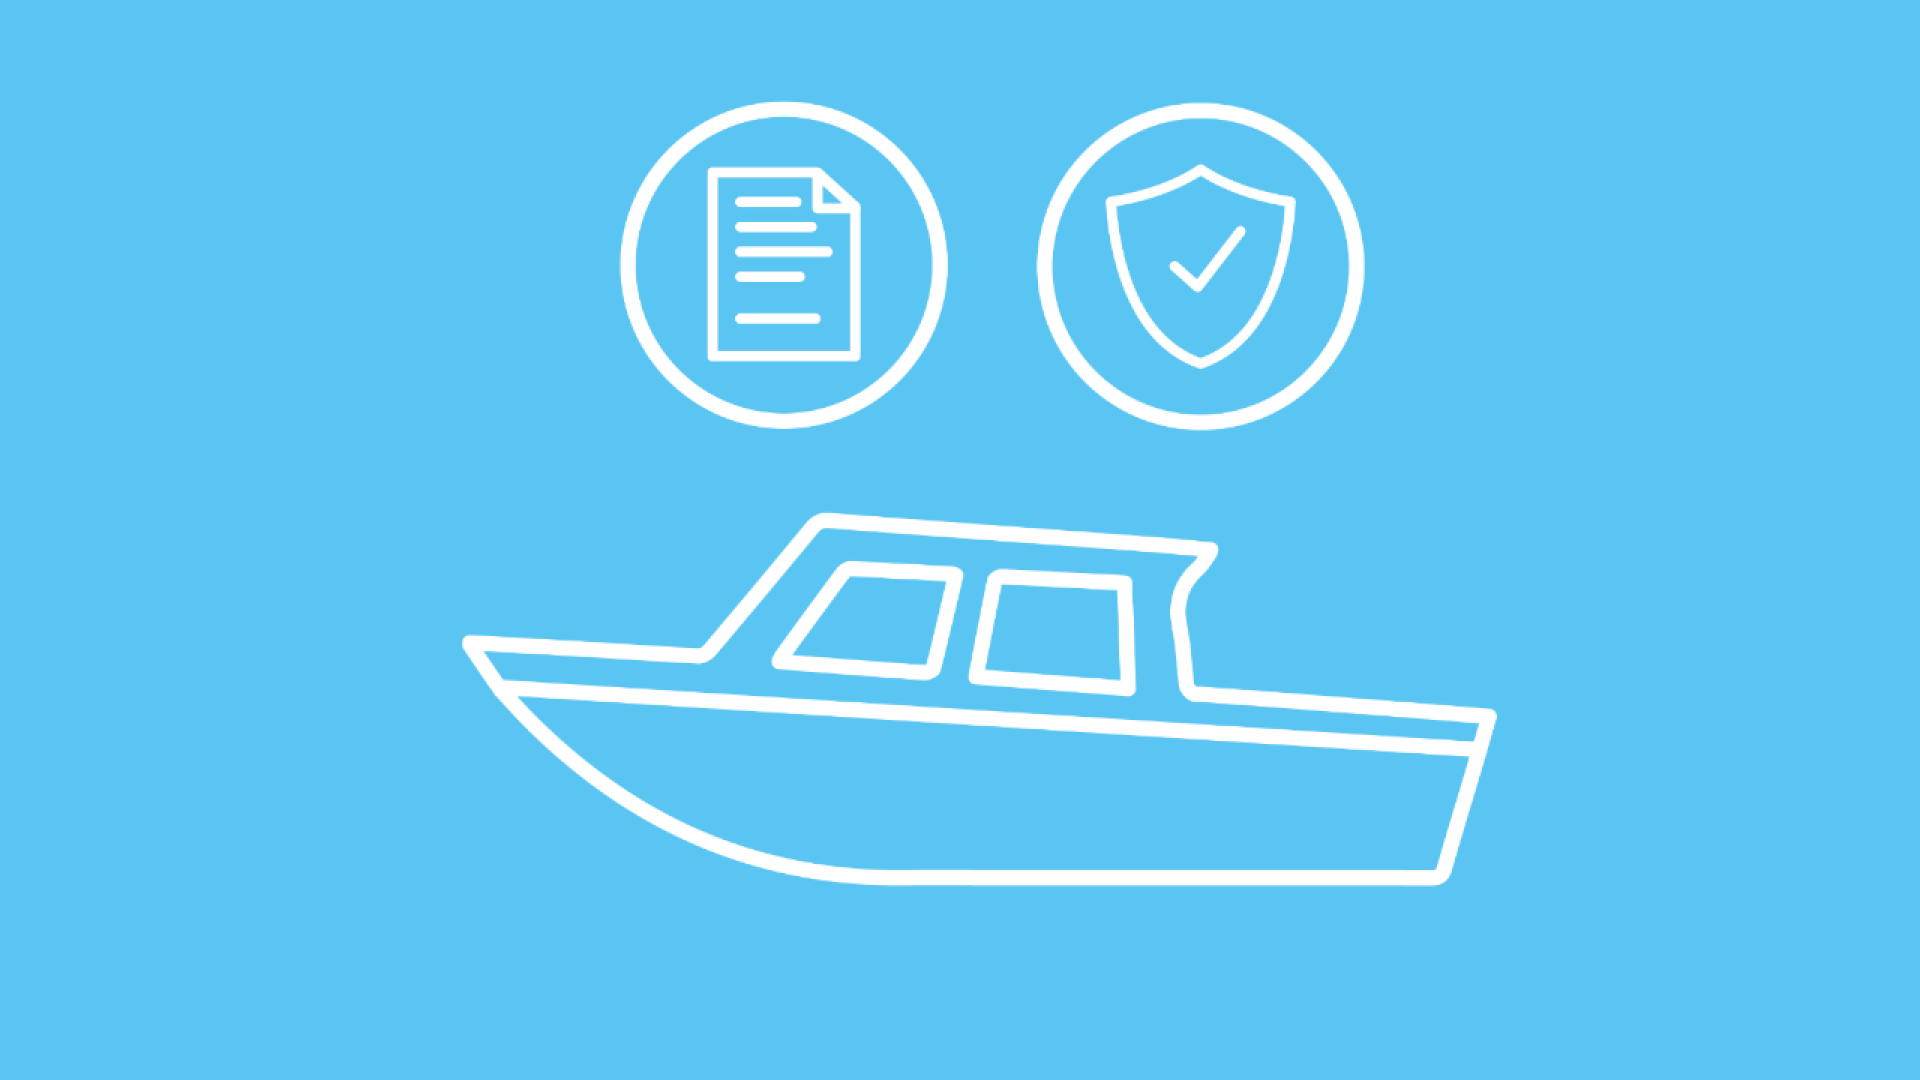 Ein Motorboot, für das im Rahmen der Wassersportversicherung Haftplicht und eine Kasko abgeschlossen werden kann. Der Versicherungsschutz ist über Icons dargestellt.